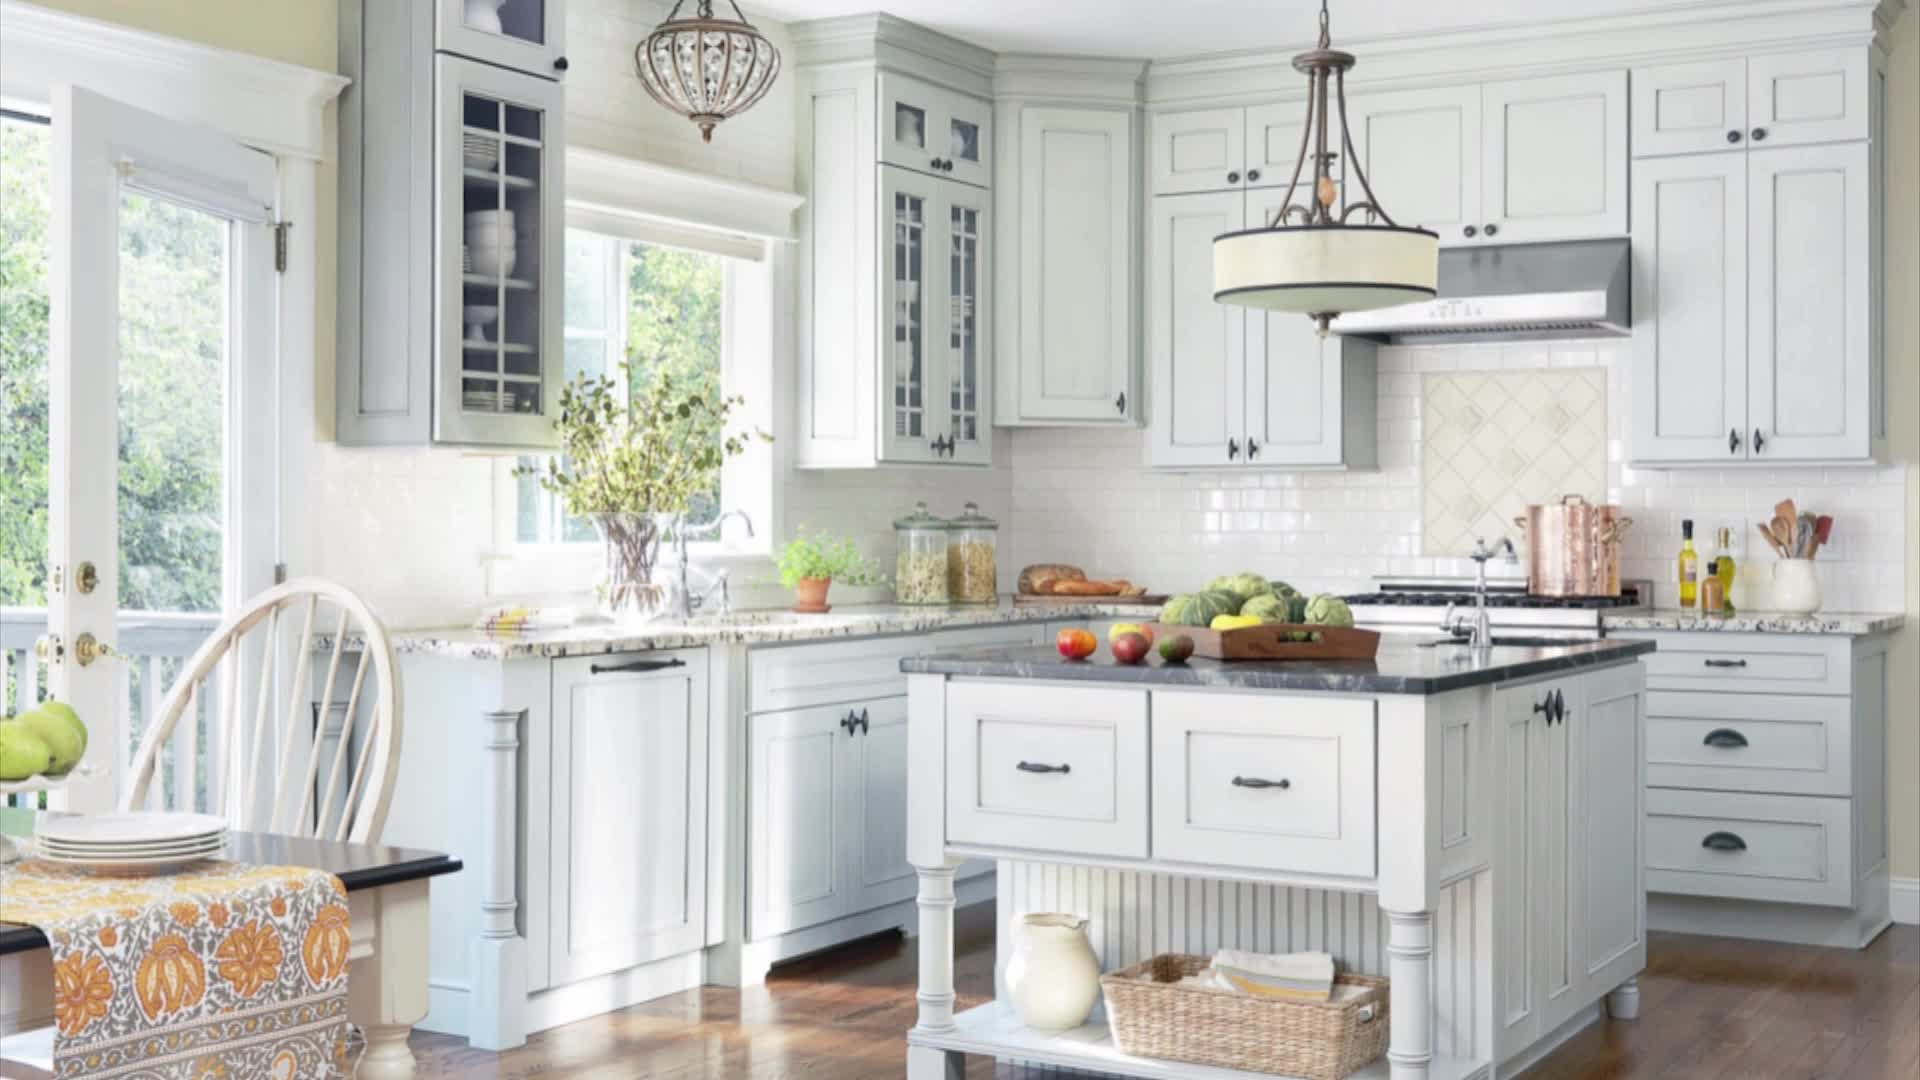 Bemutatjuk, hogy hogyan újíthatod fel a konyhádat anélkül, hogy újra kellene bútoroznod! 